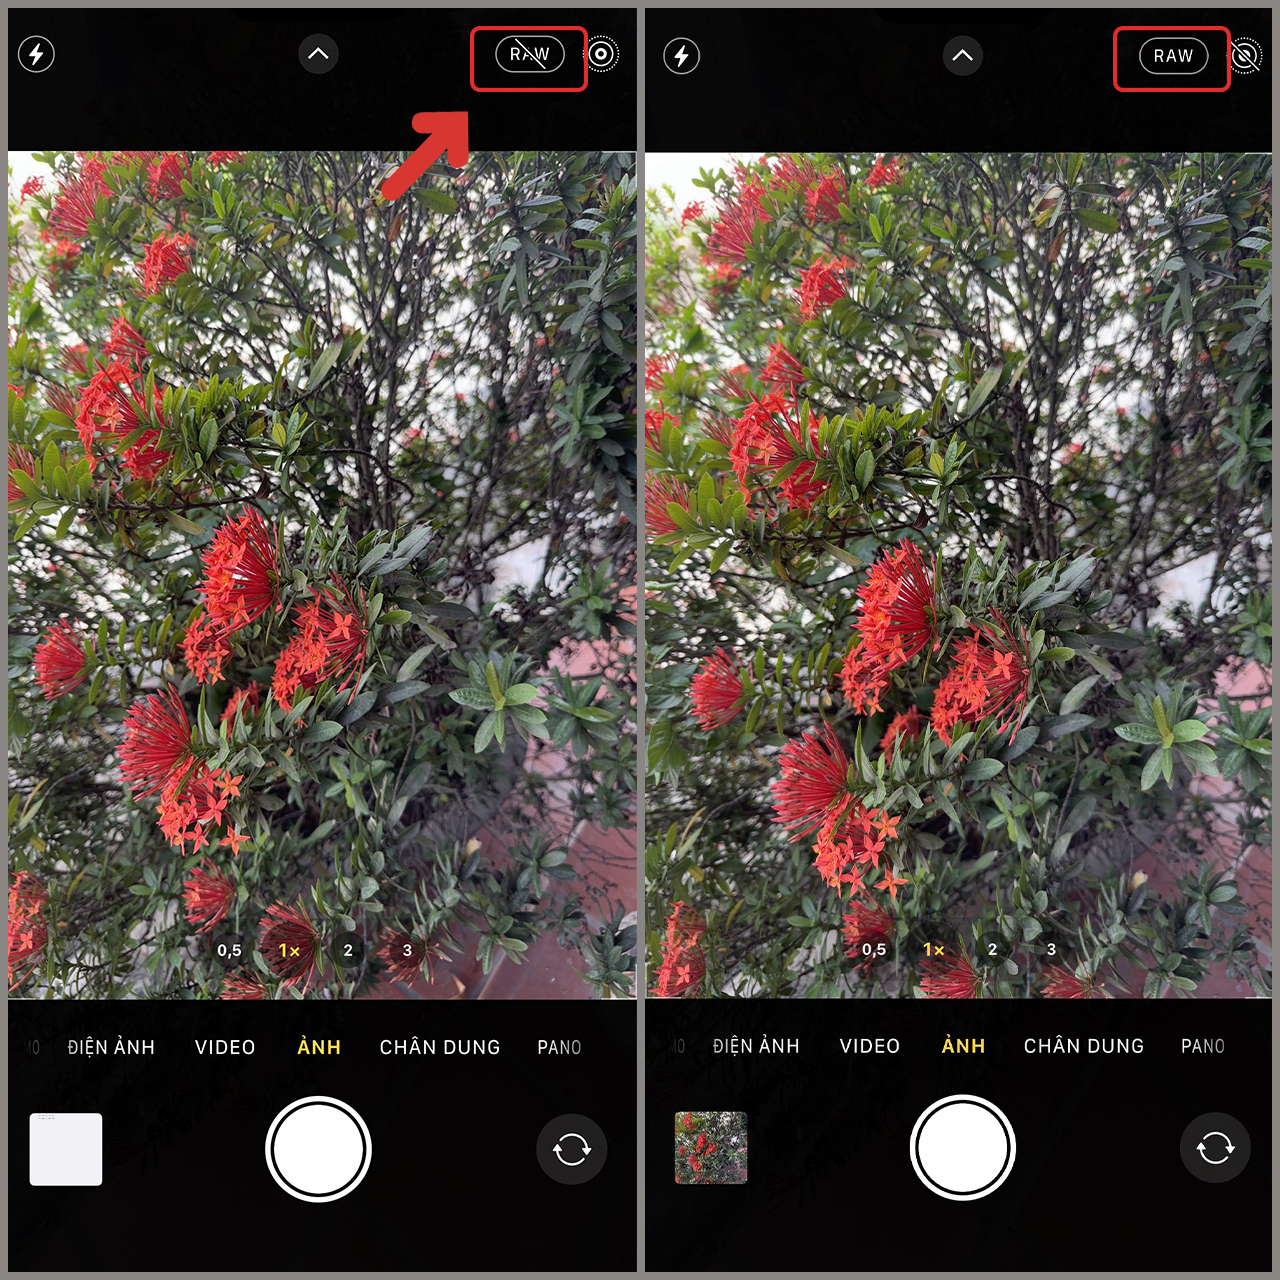 Camera 48 MP trên smartphone là xu hướng mới hiện nay. Với số lượng pixel lớn, các bức ảnh chụp sẽ rõ nét và chi tiết hơn bao giờ hết. Hãy xem hình ảnh để cảm nhận được chất lượng ảnh kỳ diệu được tạo ra từ camera 48 MP.